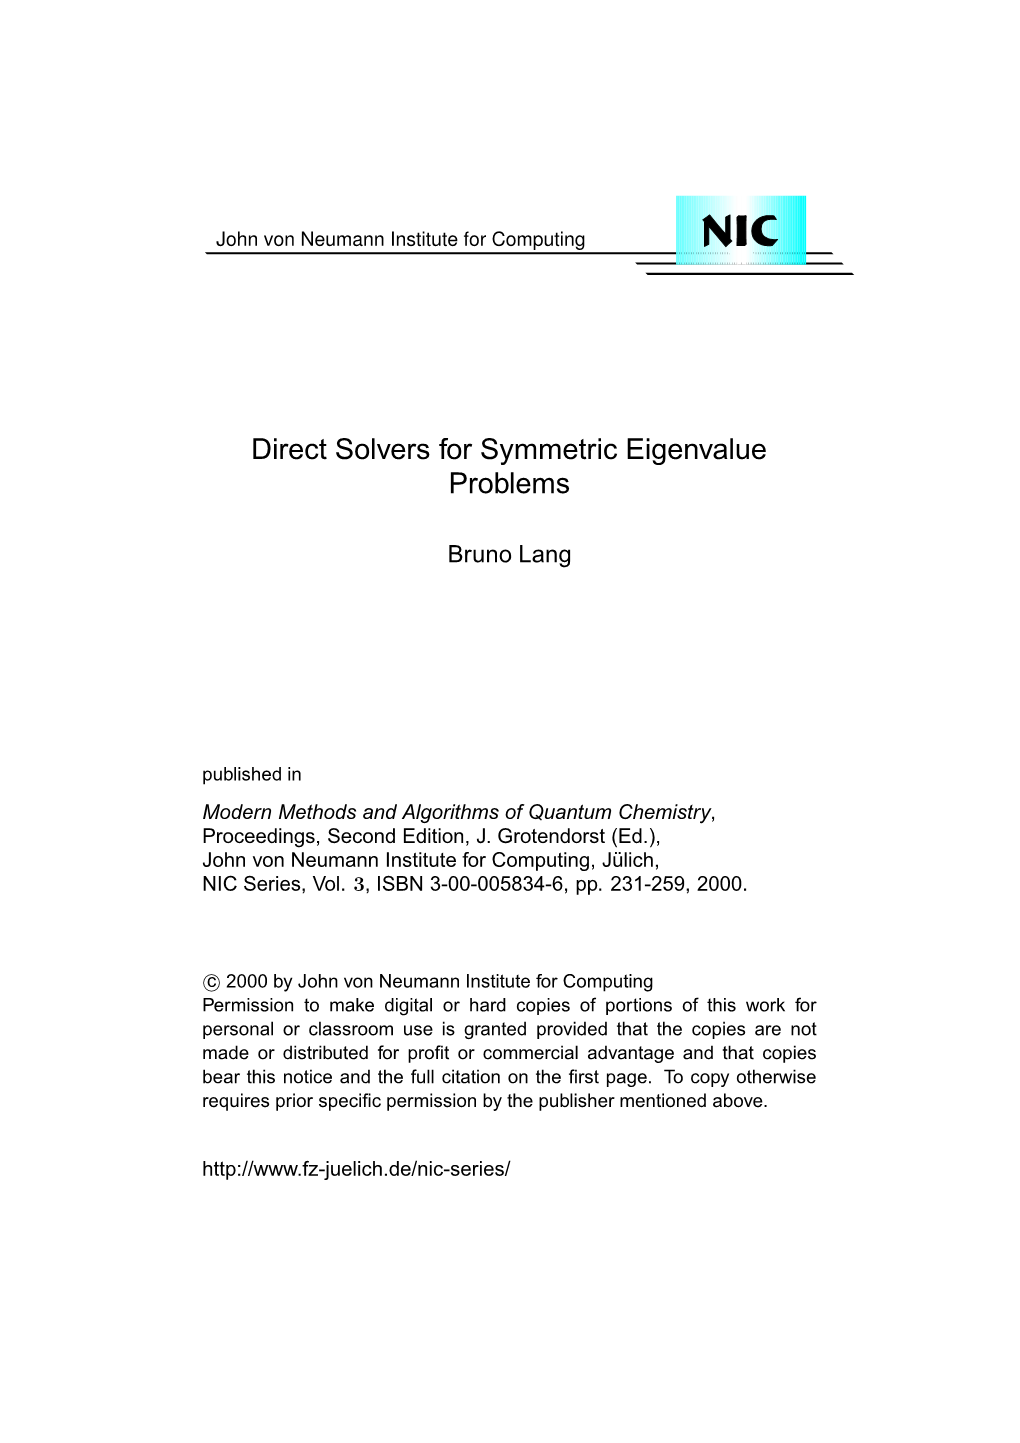 Direct Solvers for Symmetric Eigenvalue Problems